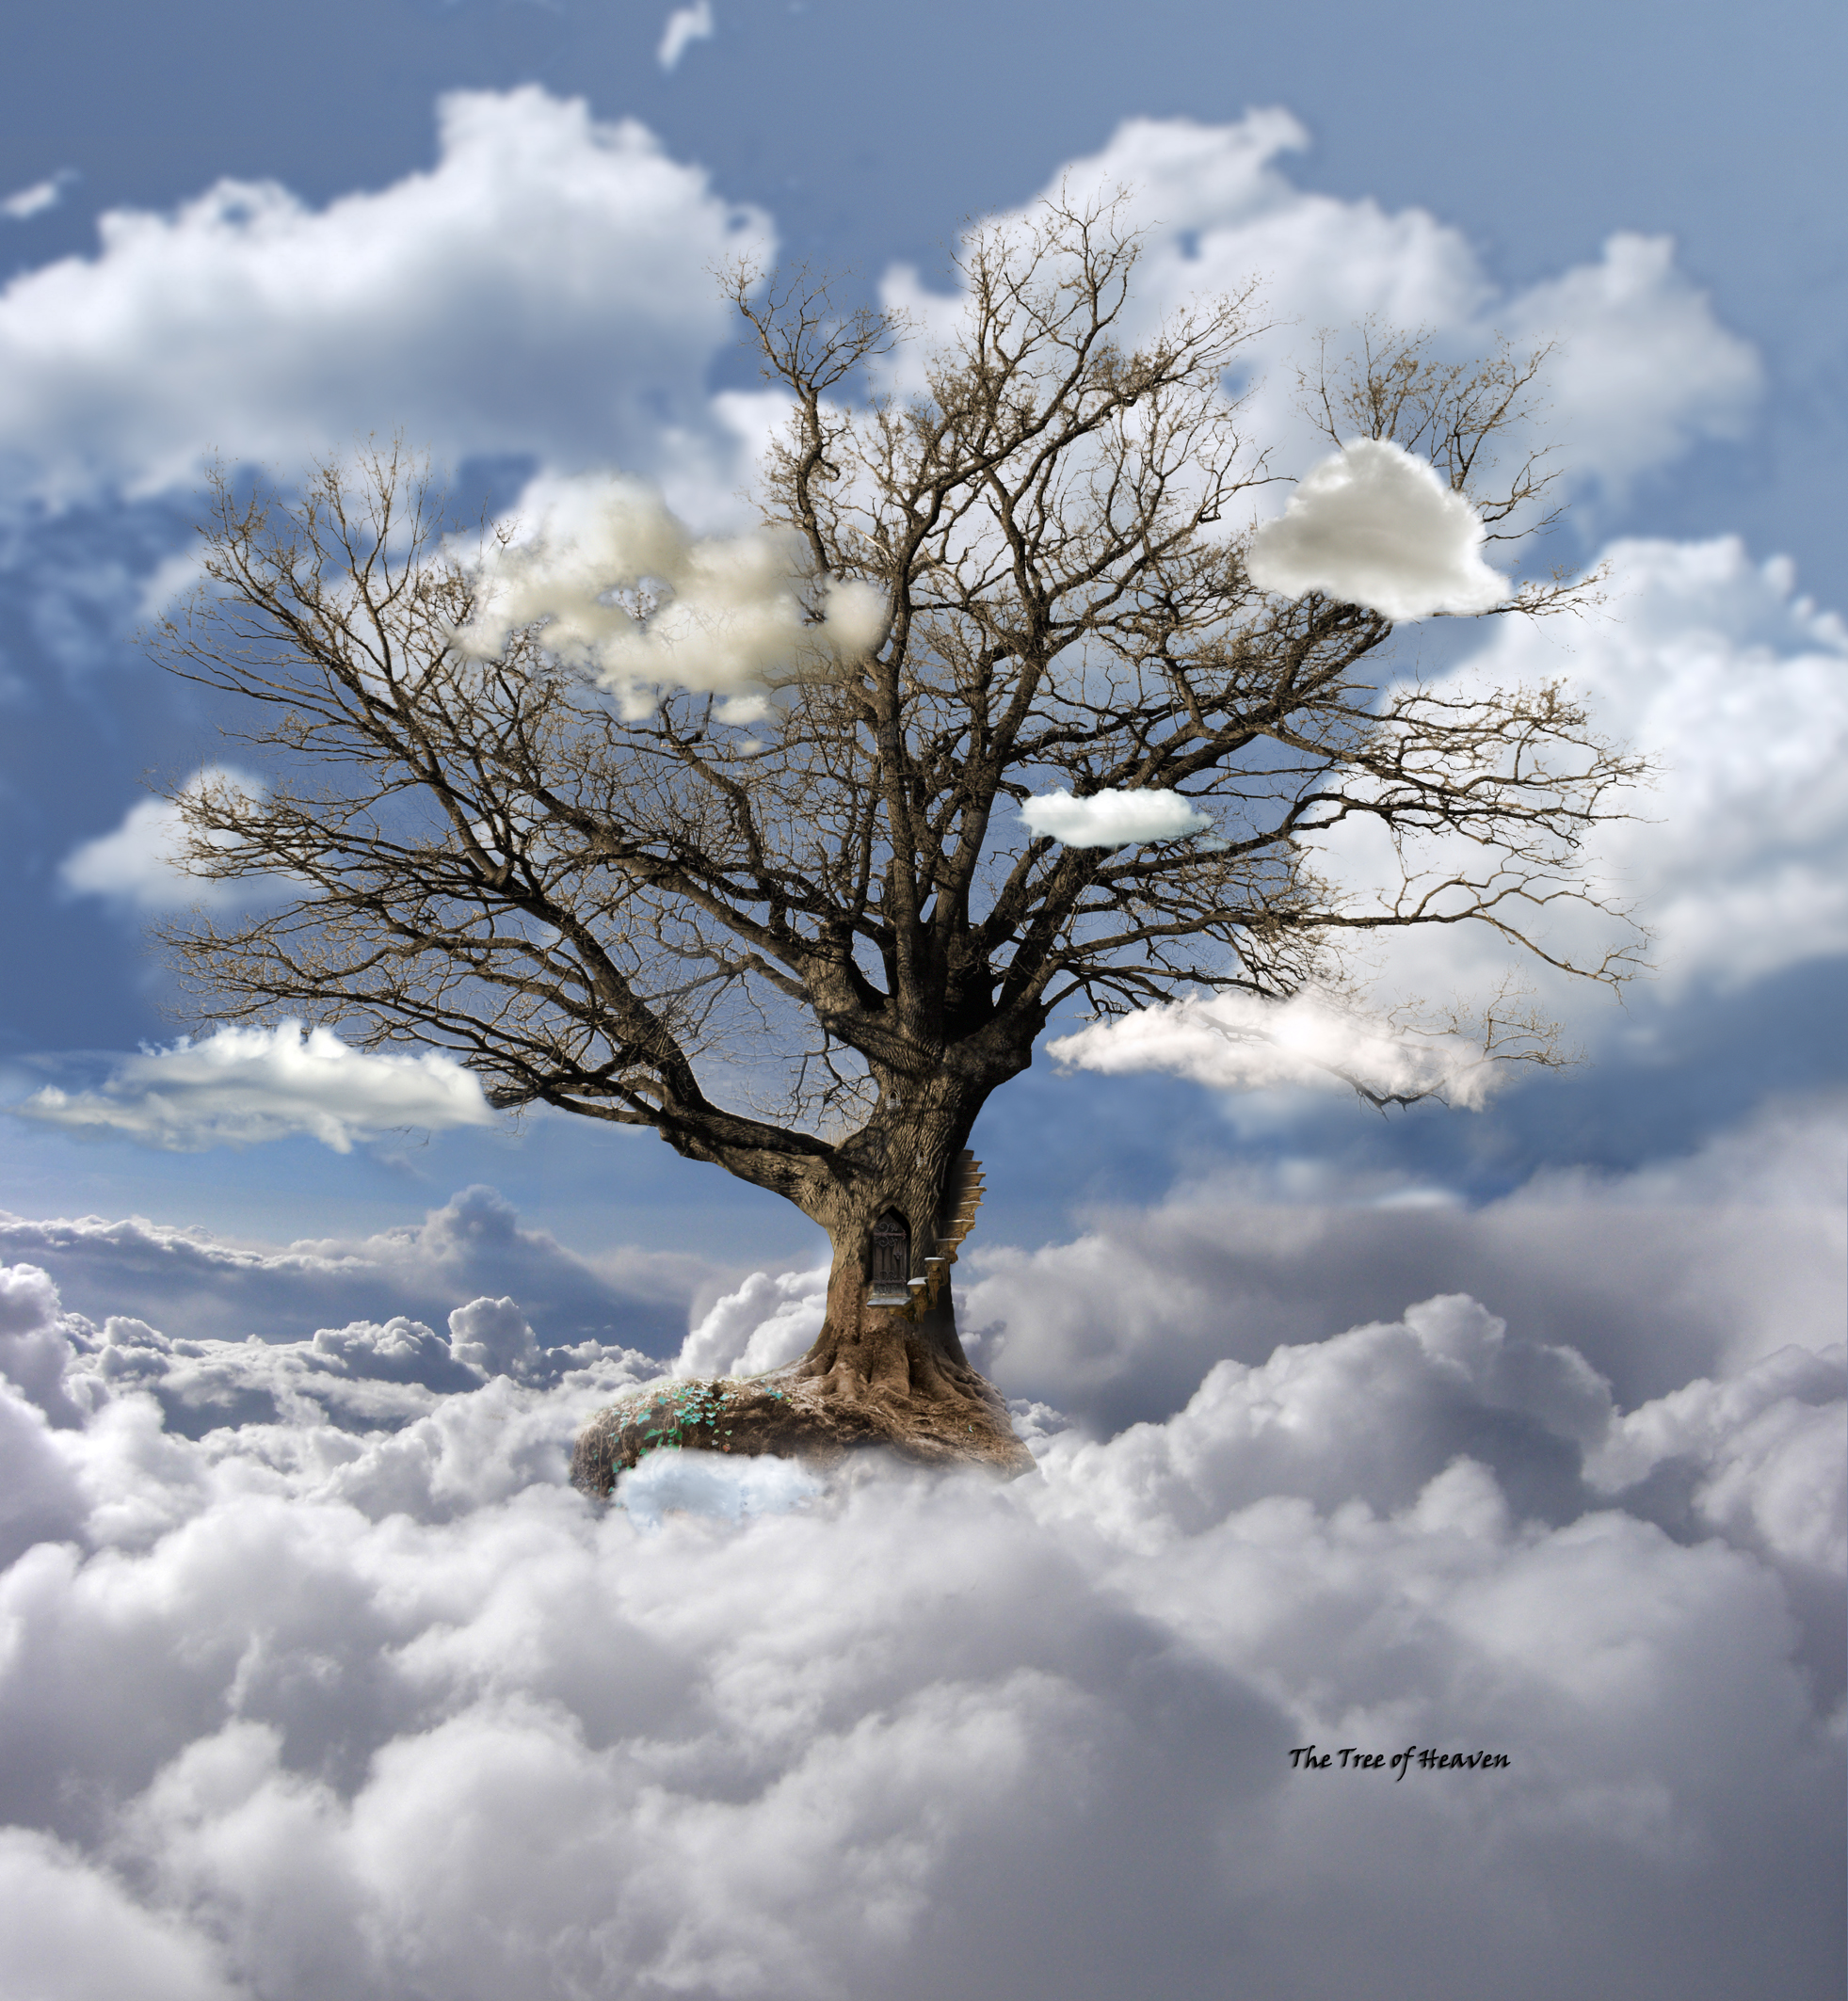 Tree of Heaven by egypt04 on DeviantArt